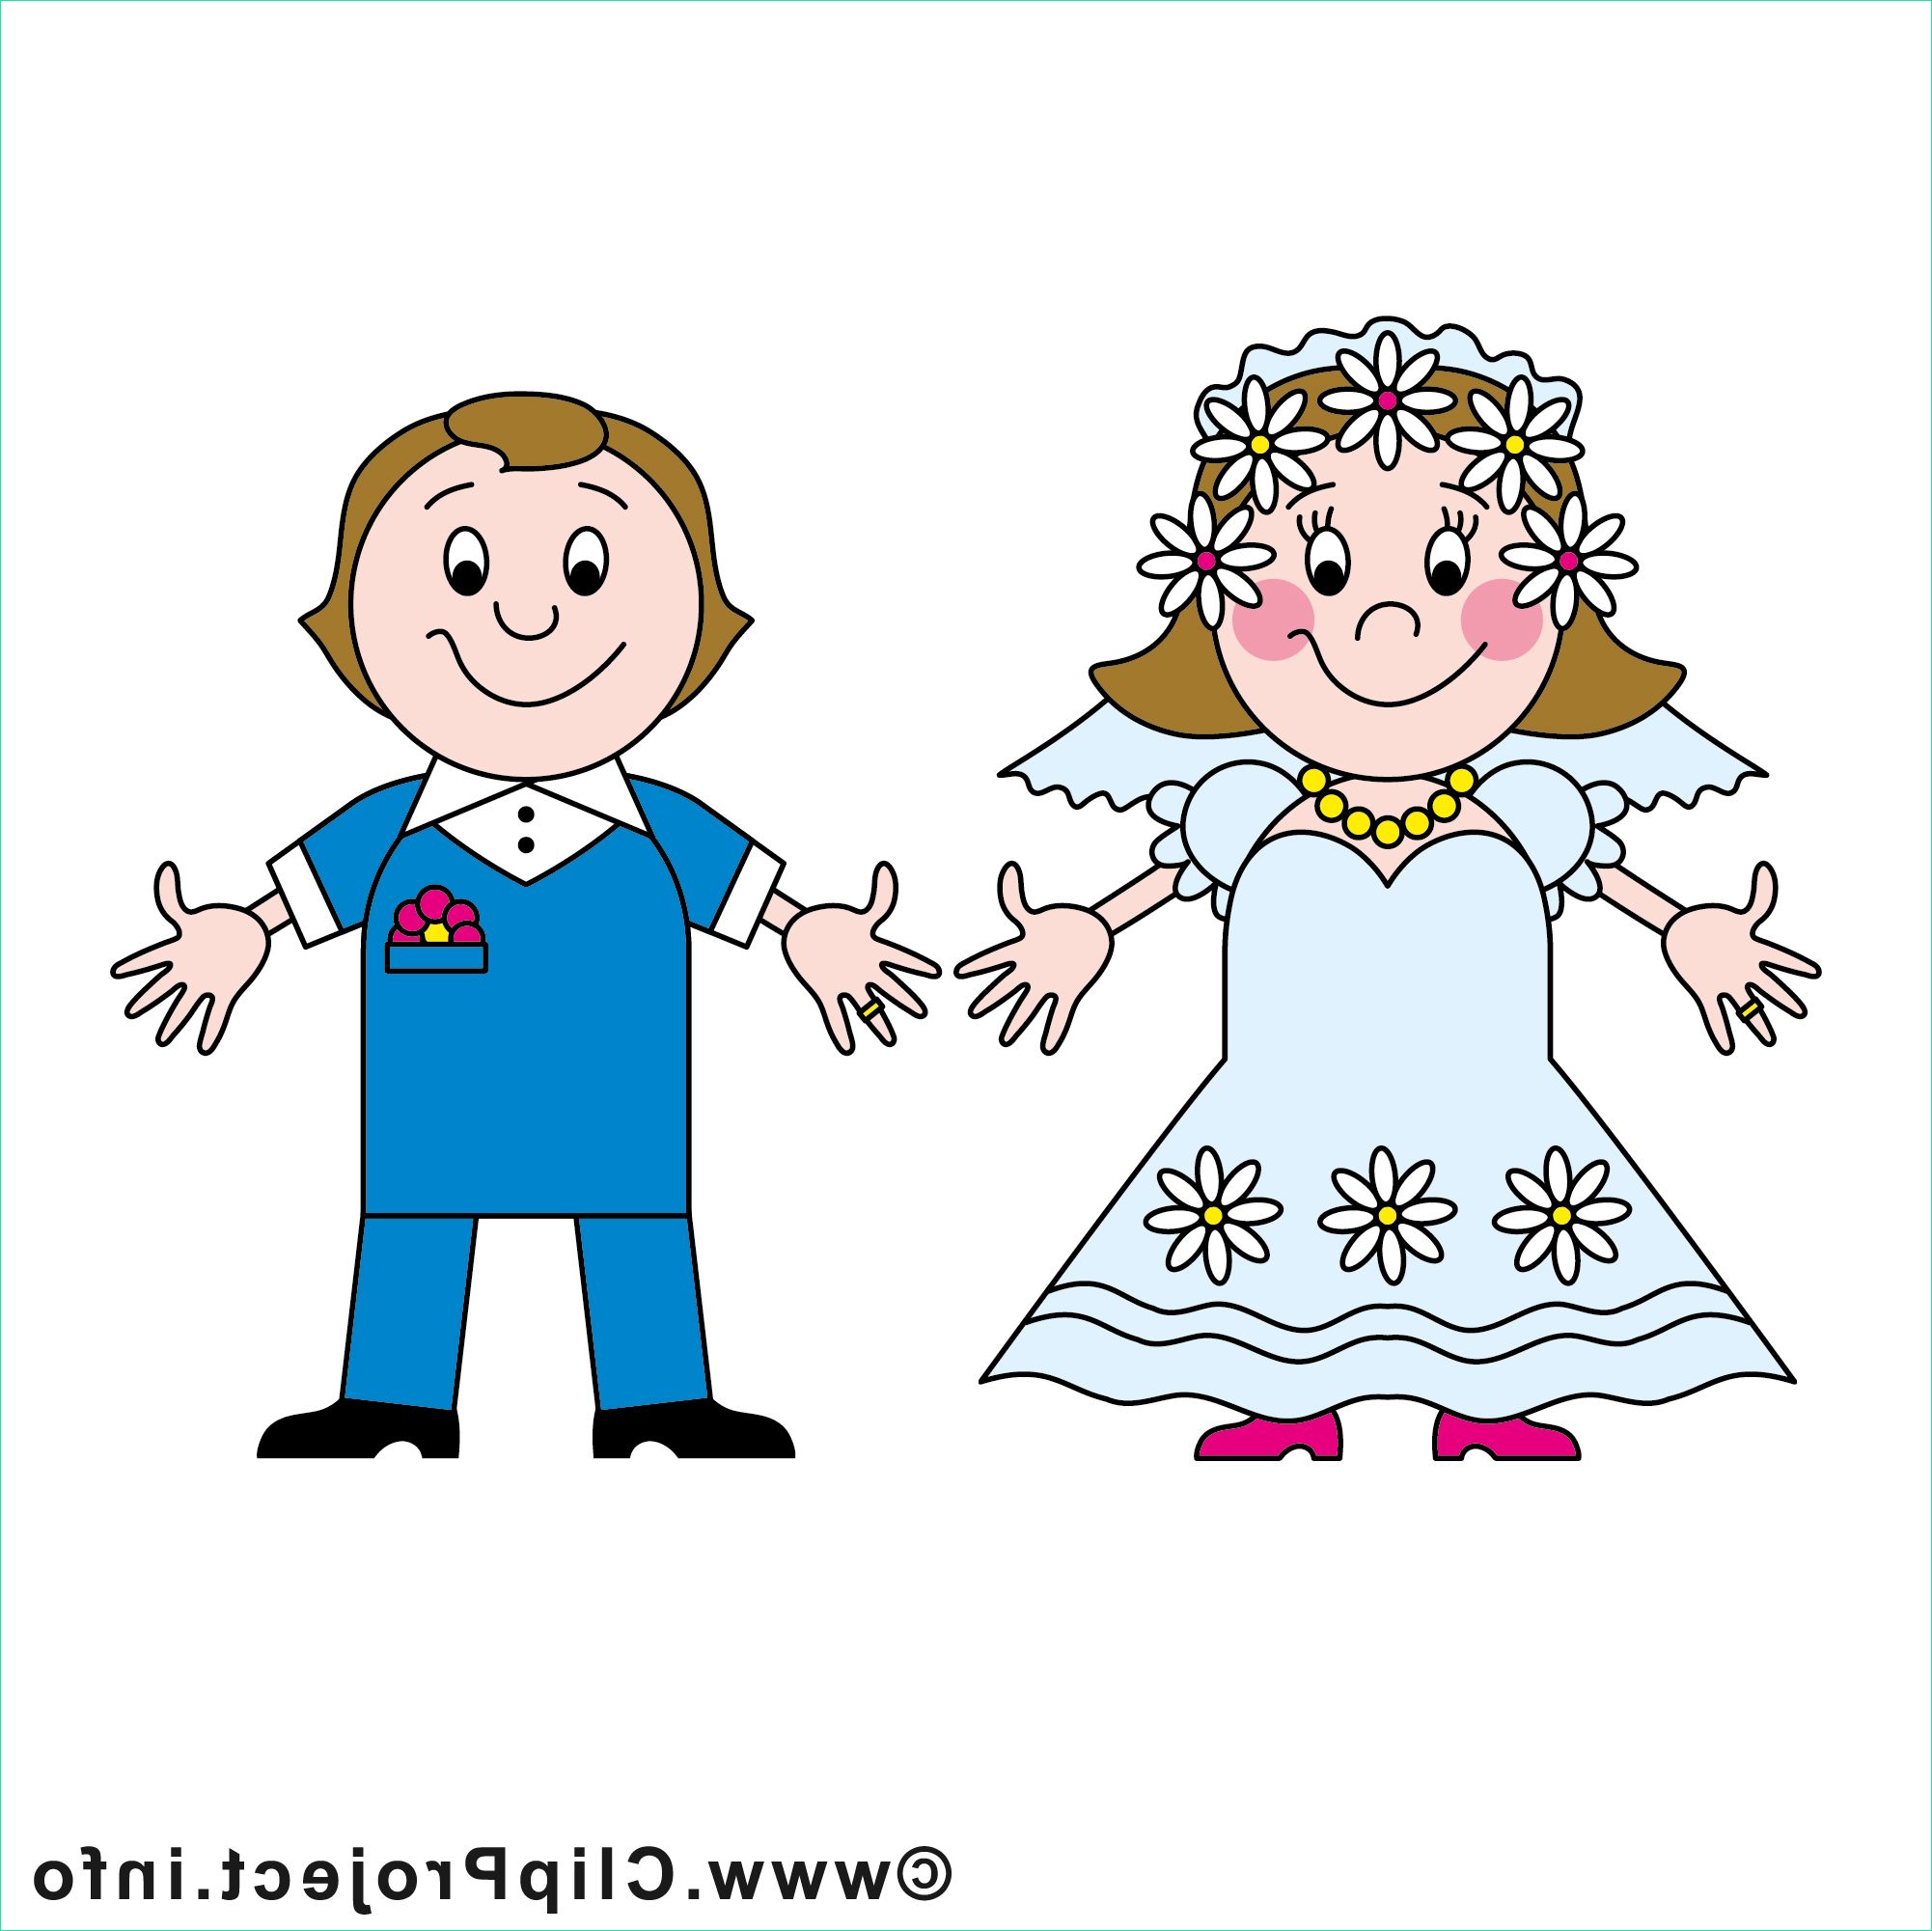 noce images mariage dessins gratuits 7836